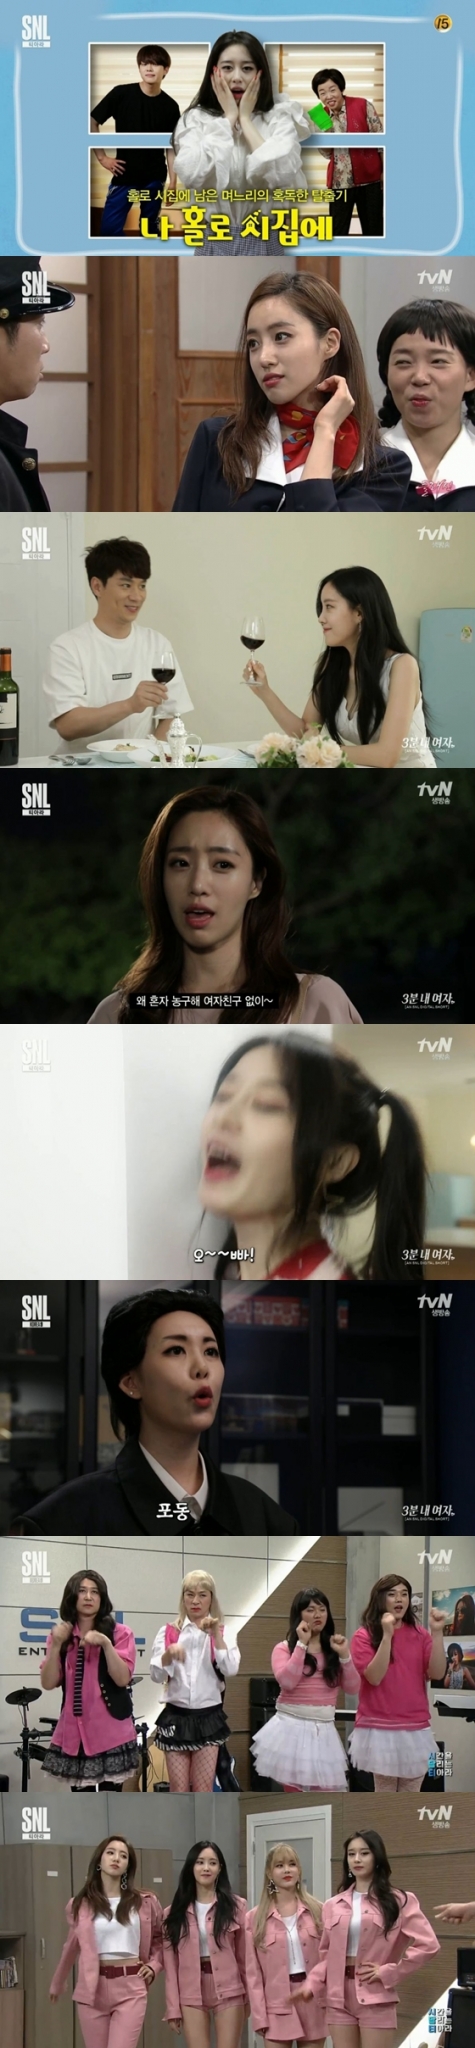 /사진=tvN 예능프로그램 \'SNL 코리아 9\'방송화면 캡처